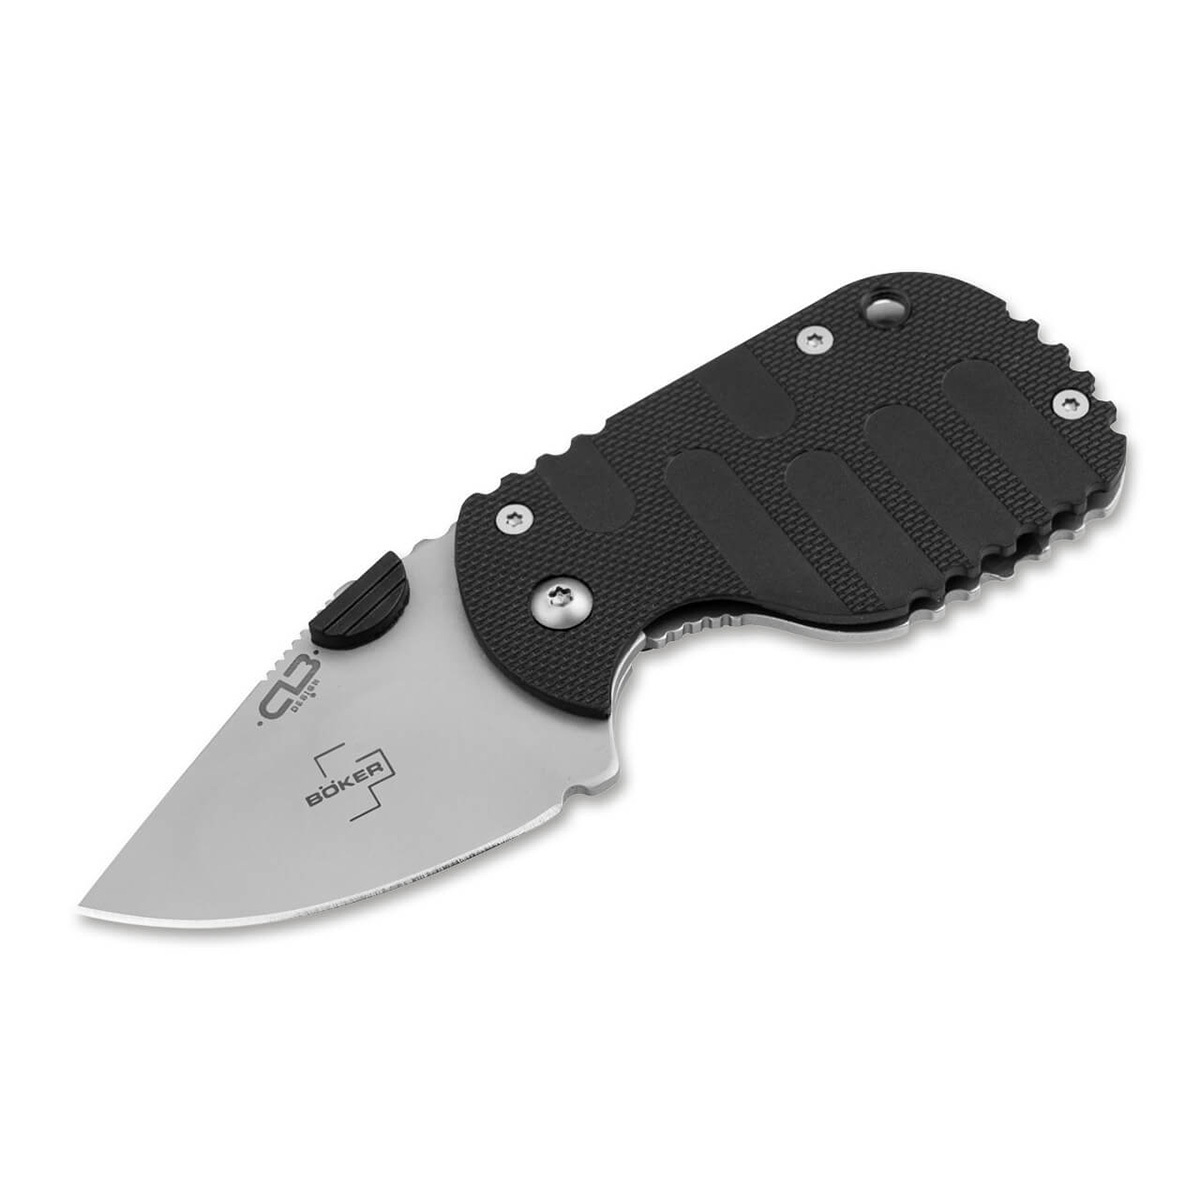 Складной нож Boker Subcom 2.0 Black, сталь D2, рукоять zytel/сталь - фото 1